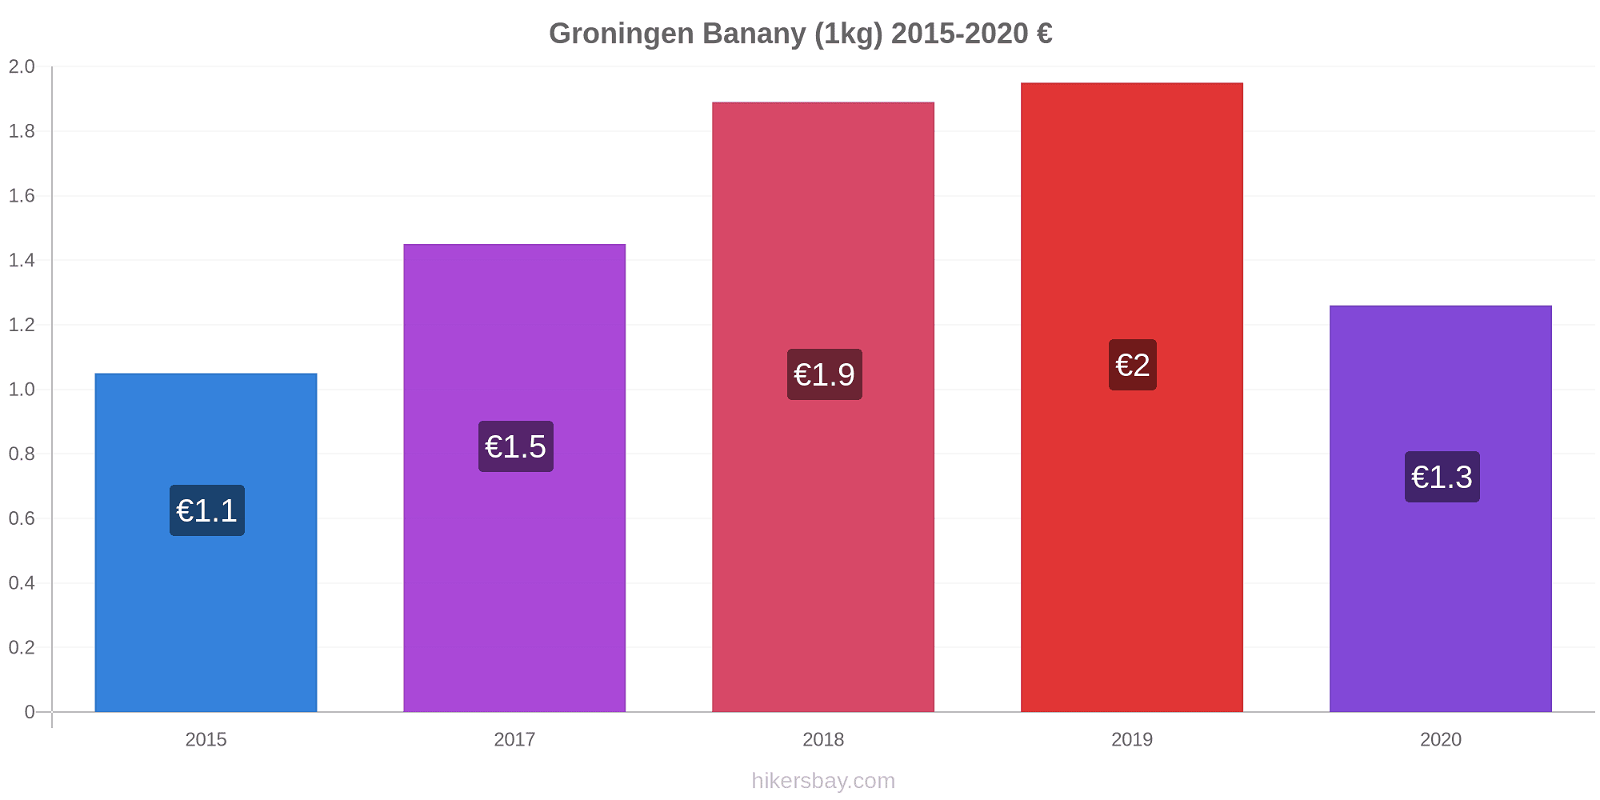 Groningen zmiany cen Banany (1kg) hikersbay.com